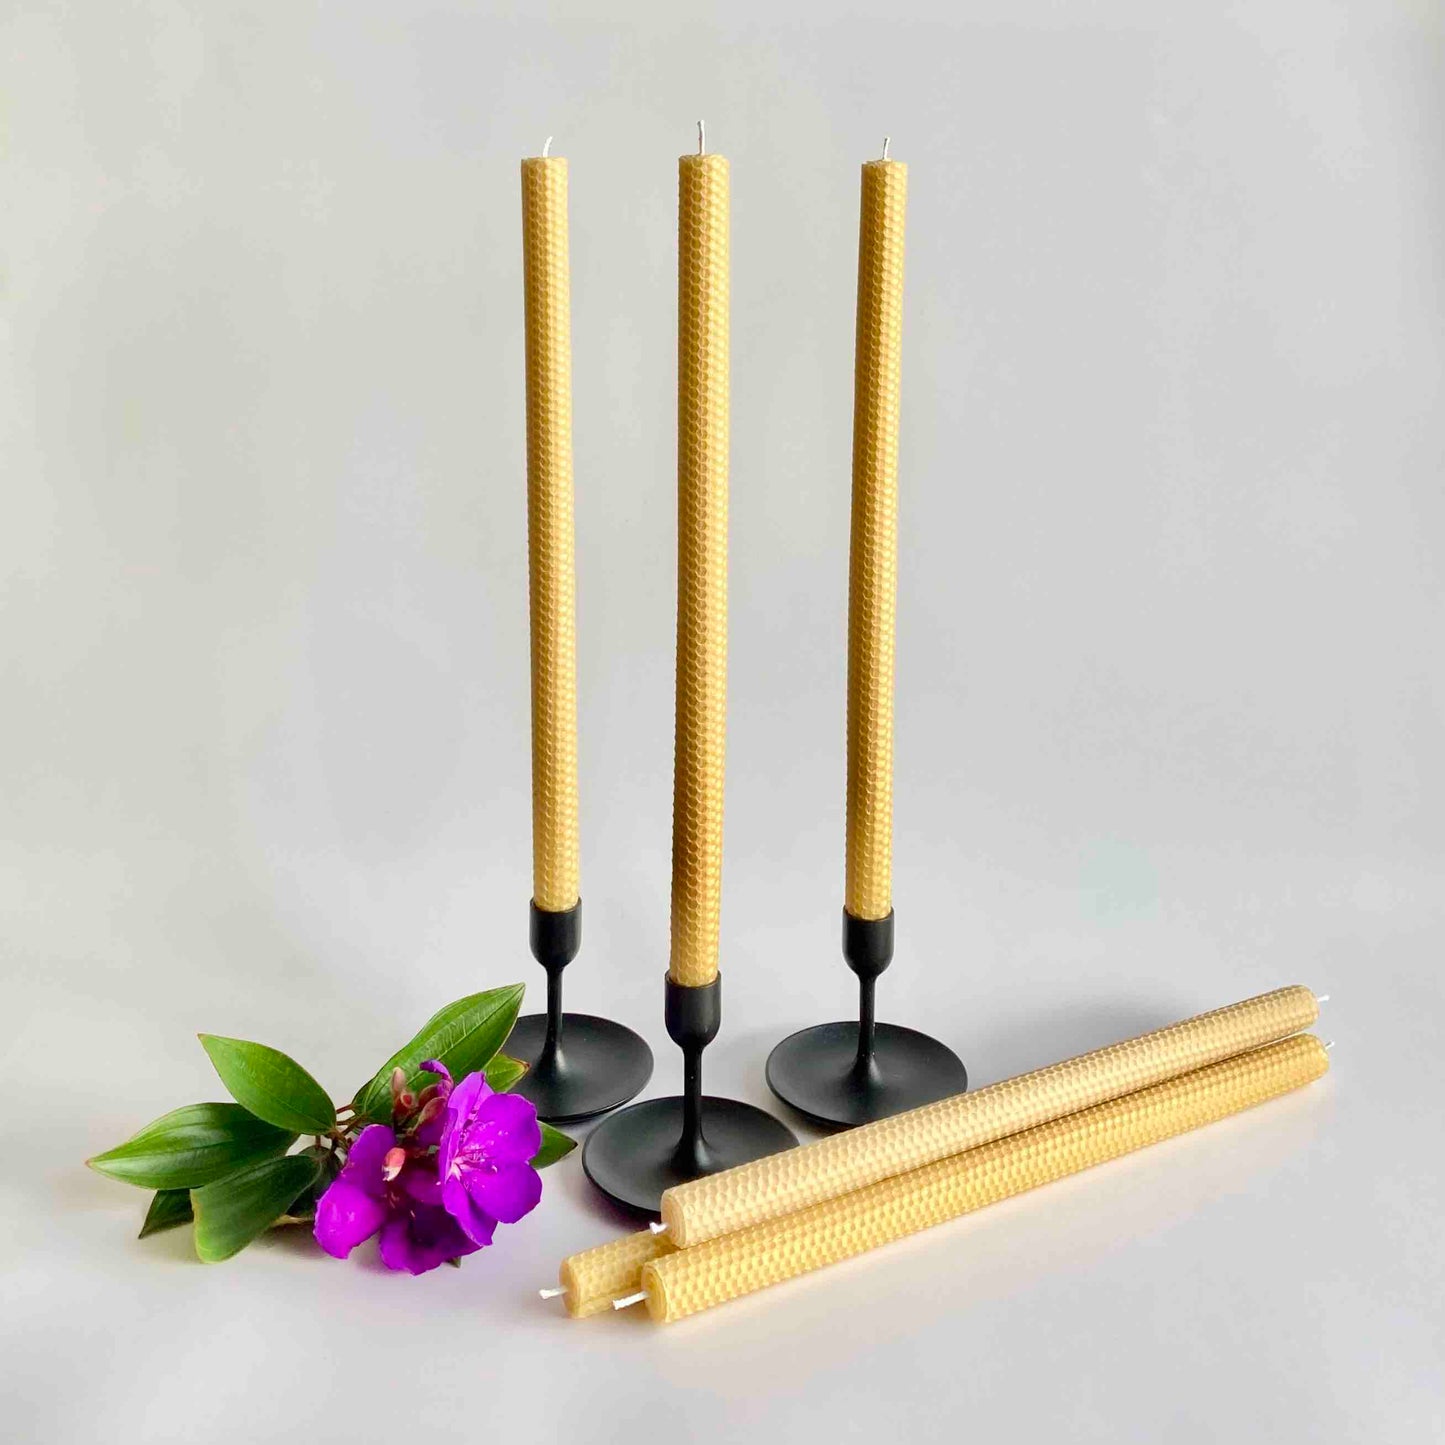 Beeswax candlesticks